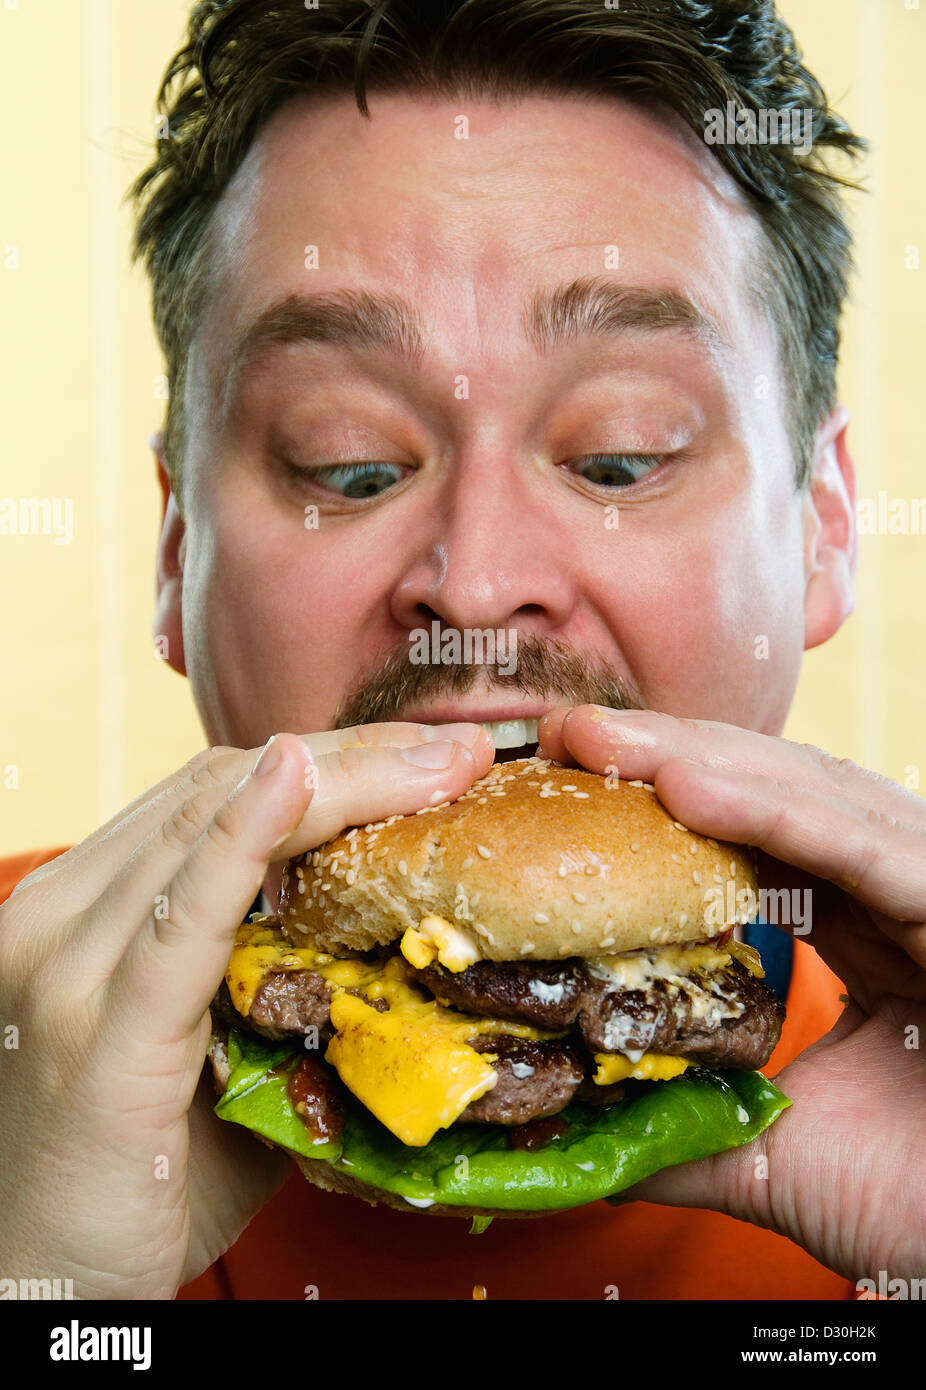 A man eating a messy hamburger Stock Photo